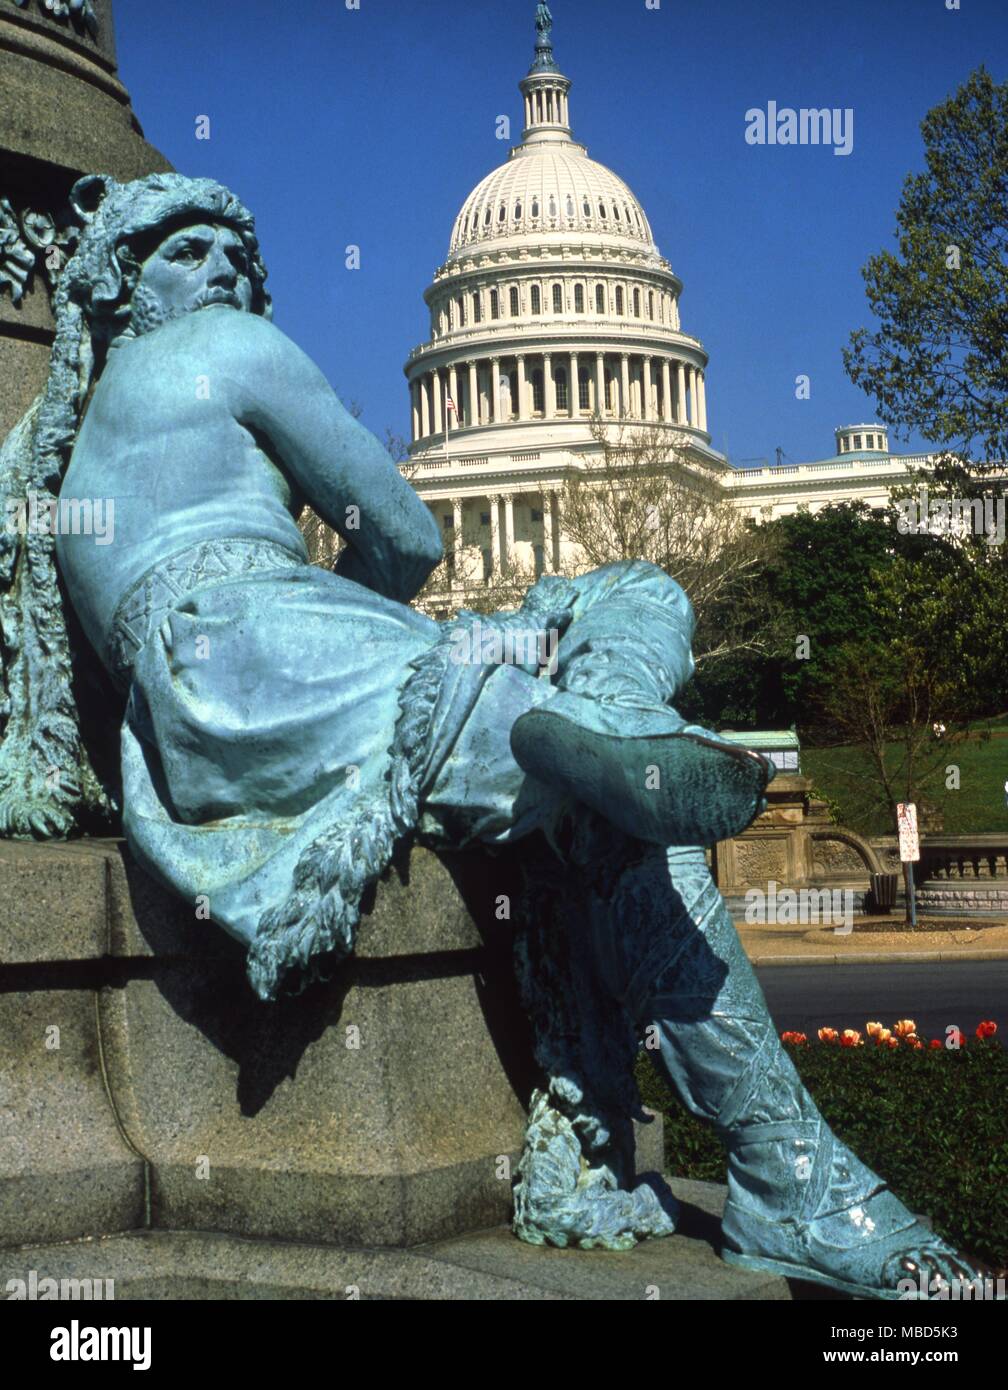 USA - Washington DC - Detail des Denkmals für die ermordeten Präsidenten Garfield, James A., in Washington, DC, im Nordosten des Capitol Building - ©/Charles Walker Stockfoto